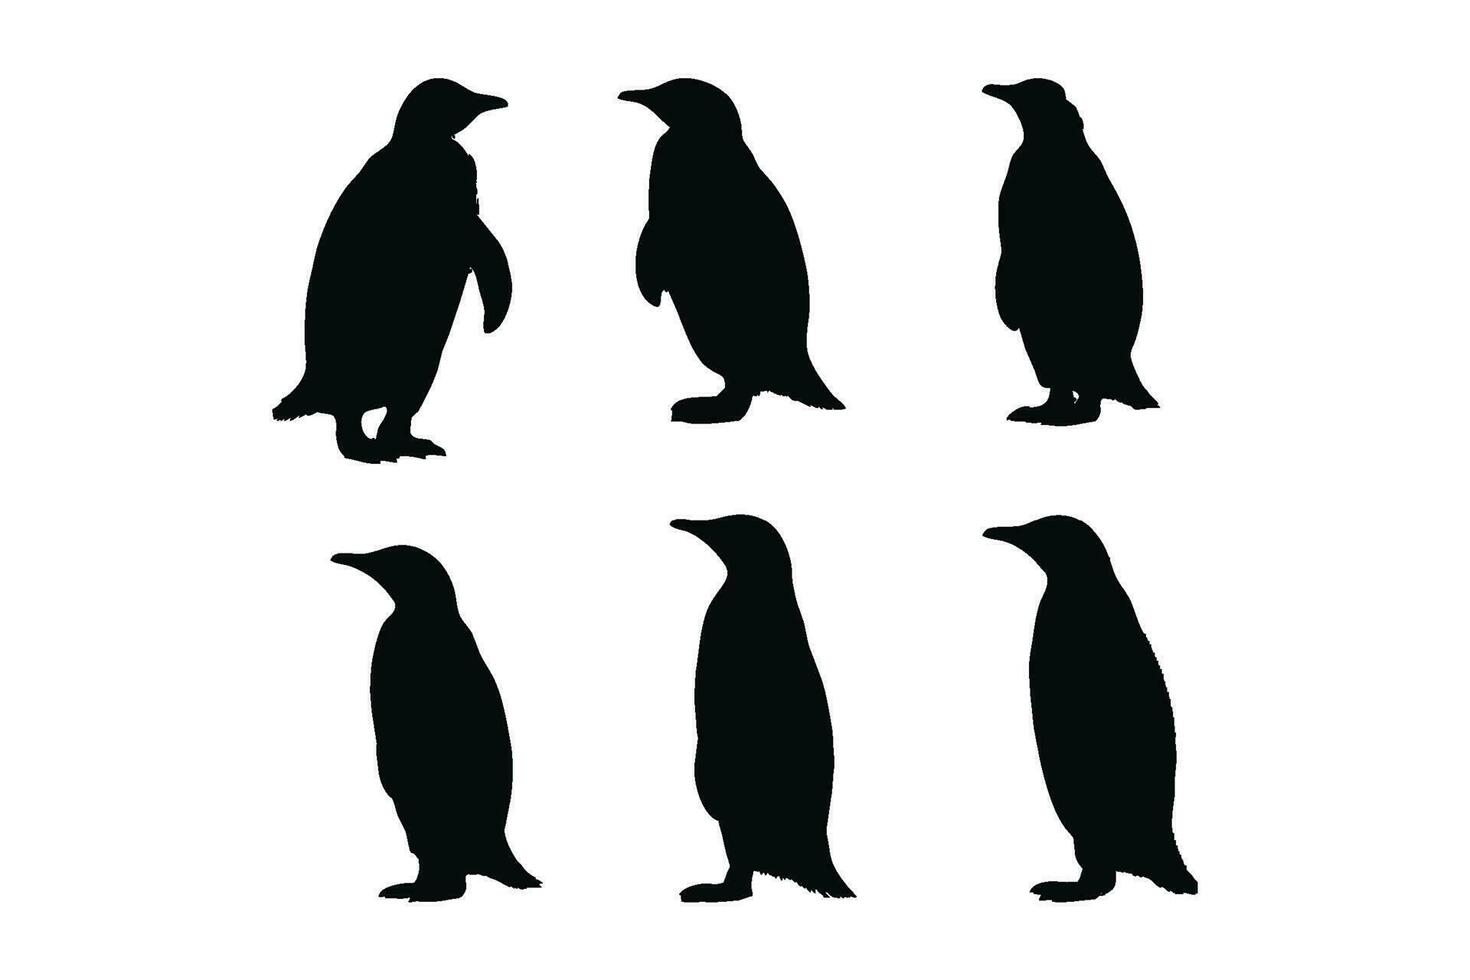 wild looploos vogel silhouet bundel ontwerp. schattig pinguïn staand silhouet reeks Aan een wit achtergrond. herbivoor pinguïns staand in verschillend posities. pinguïn vol lichaam silhouet verzameling vector